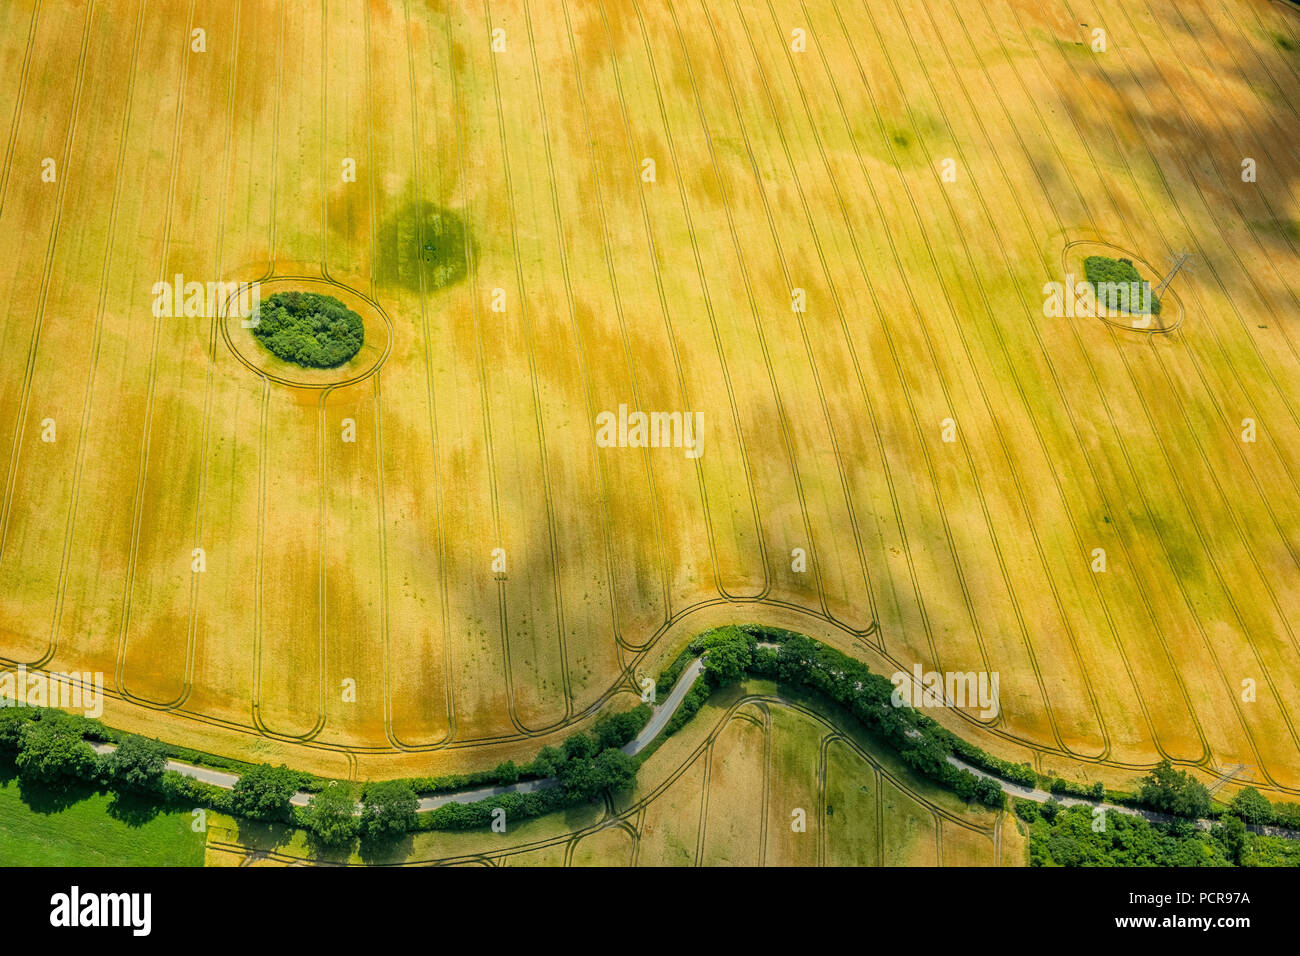 Kornfeld mit Bush Hecken in Form eines Gesichts, Landwirtschaft, Bad Oldesloe, Schleswig-Holstein, Deutschland Stockfoto